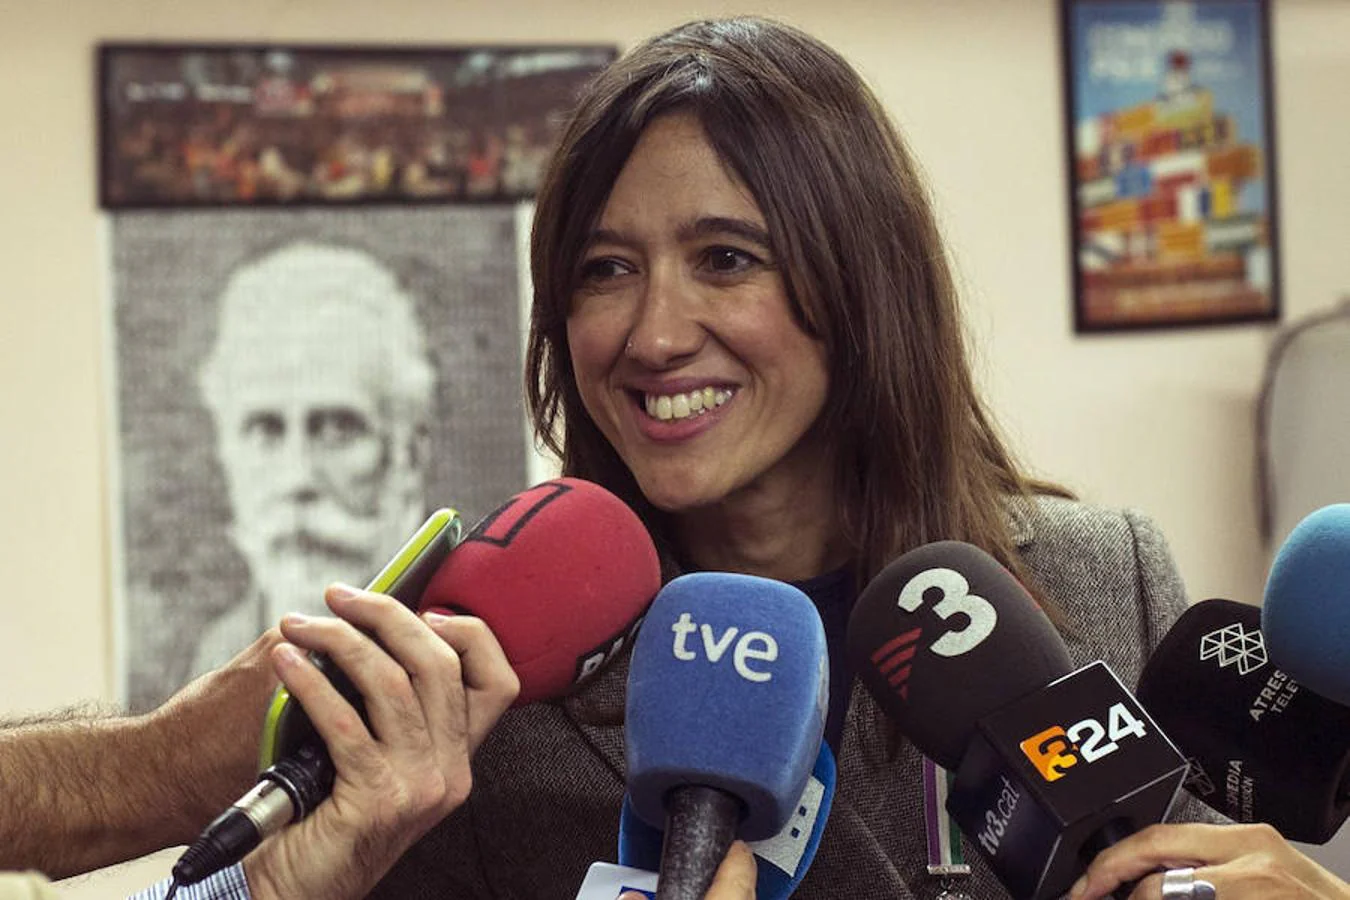 La candidata Nuria Parlón ha atendido a los medios tras votar en Santa Coloma de Gramenet, en las elecciones primarias del PSC